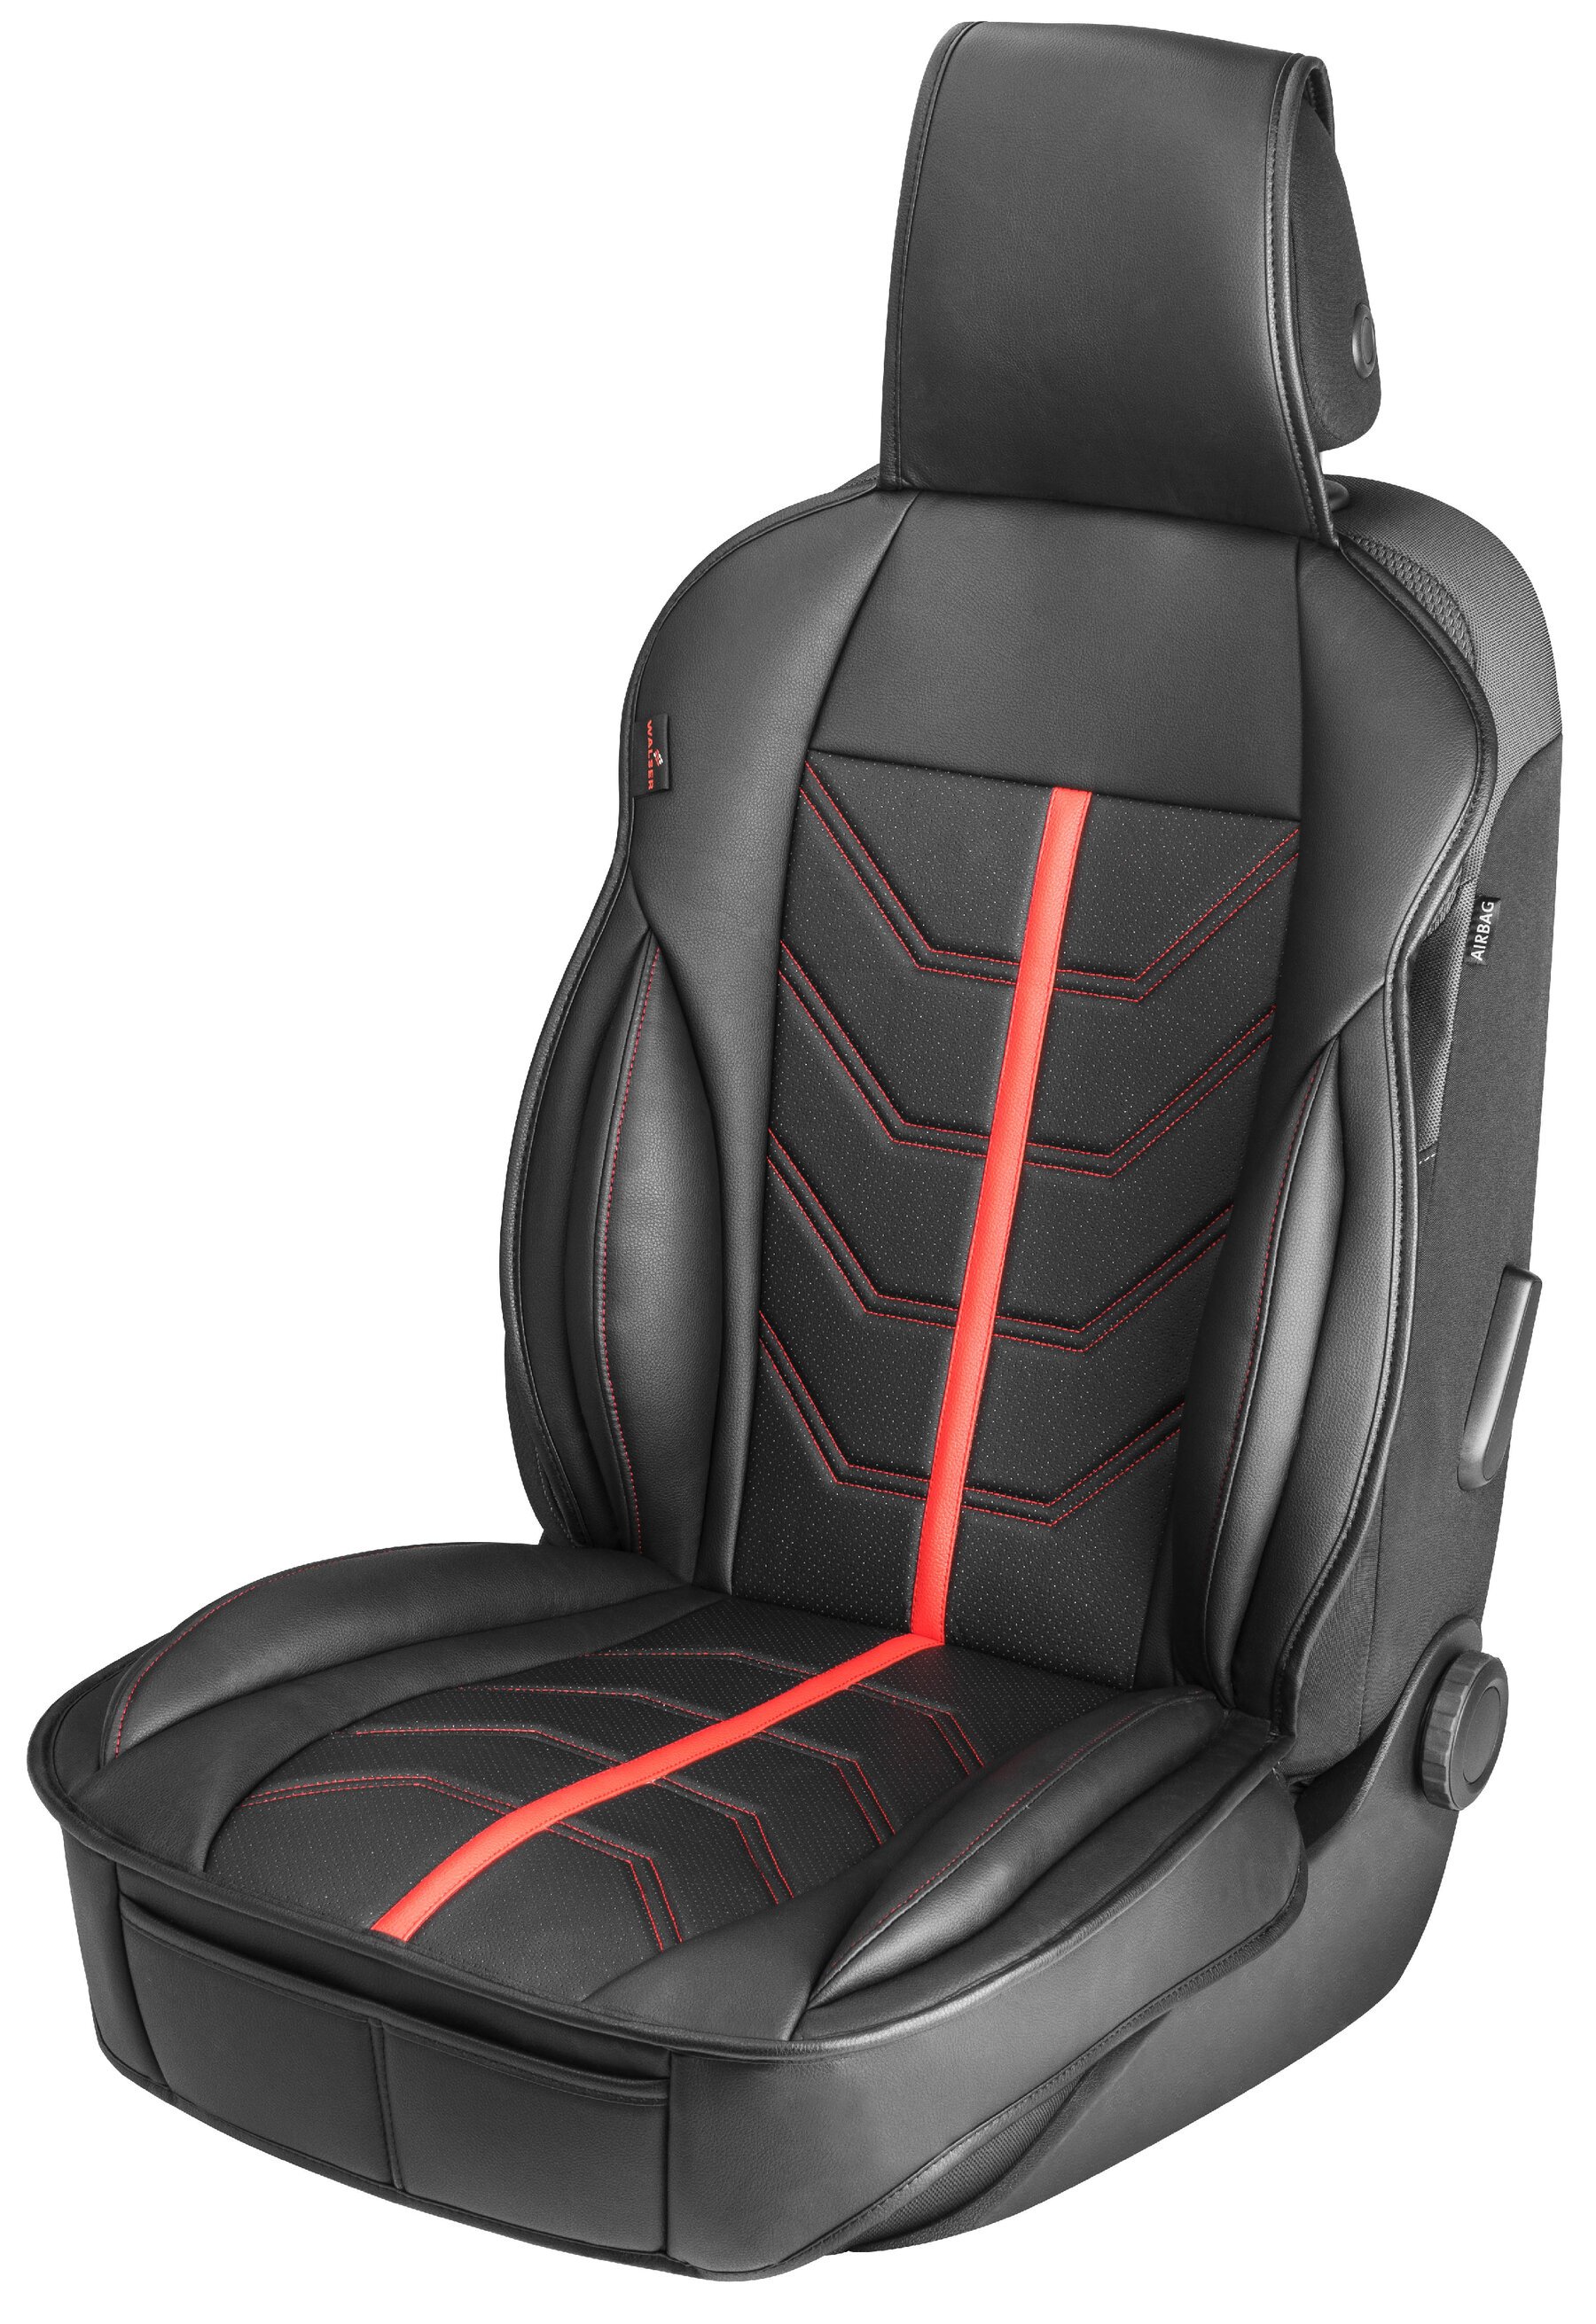 PKW Sitzauflage Kimi, Auto-Sitzaufleger im Rennsportdesign schwarz/rot